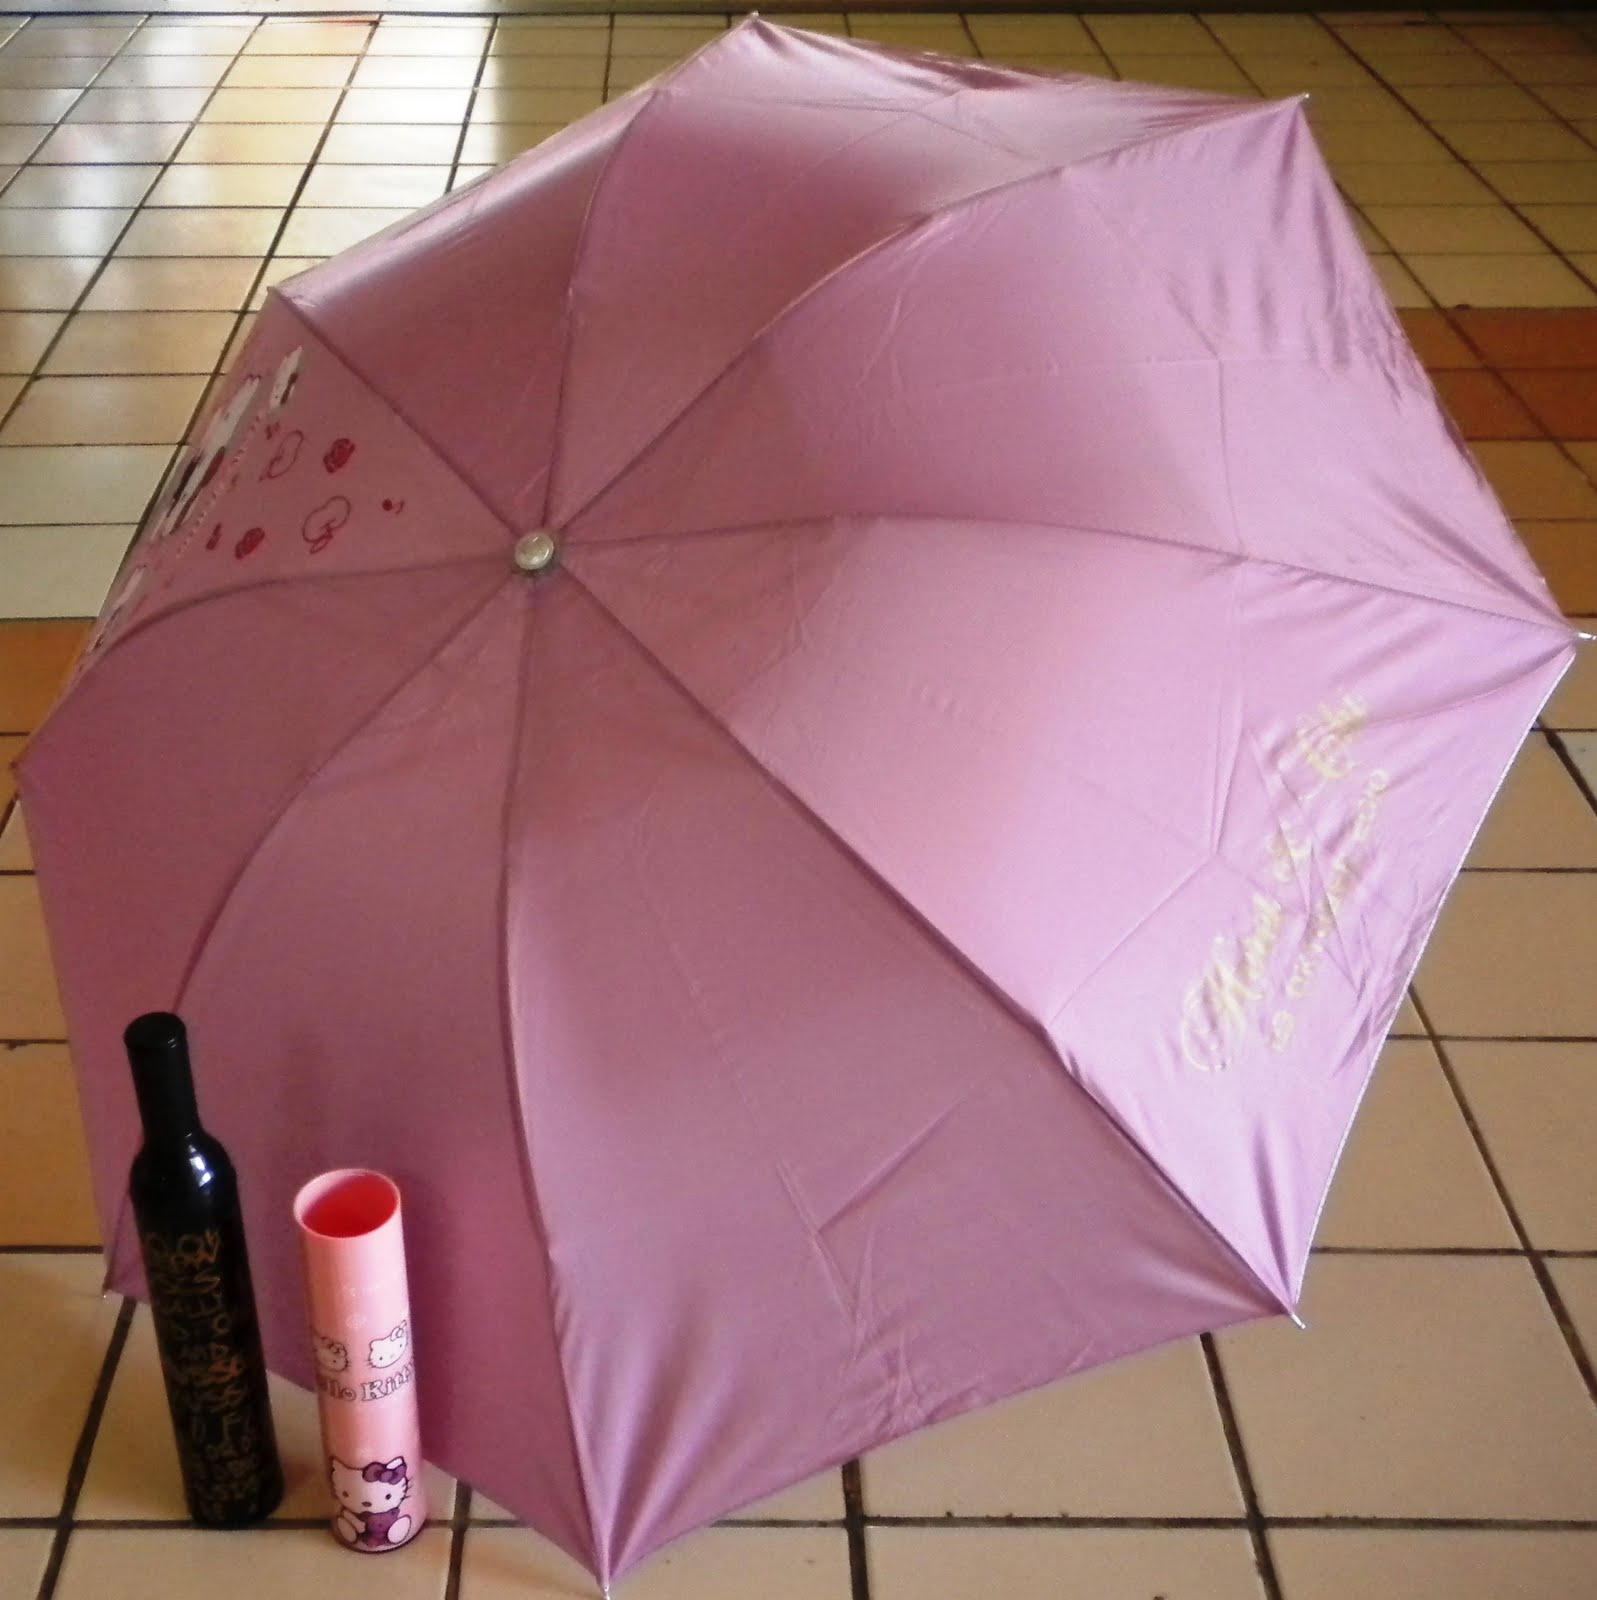 CONTOH SABLON Payung / Umbrella Stencil Examples, All Models